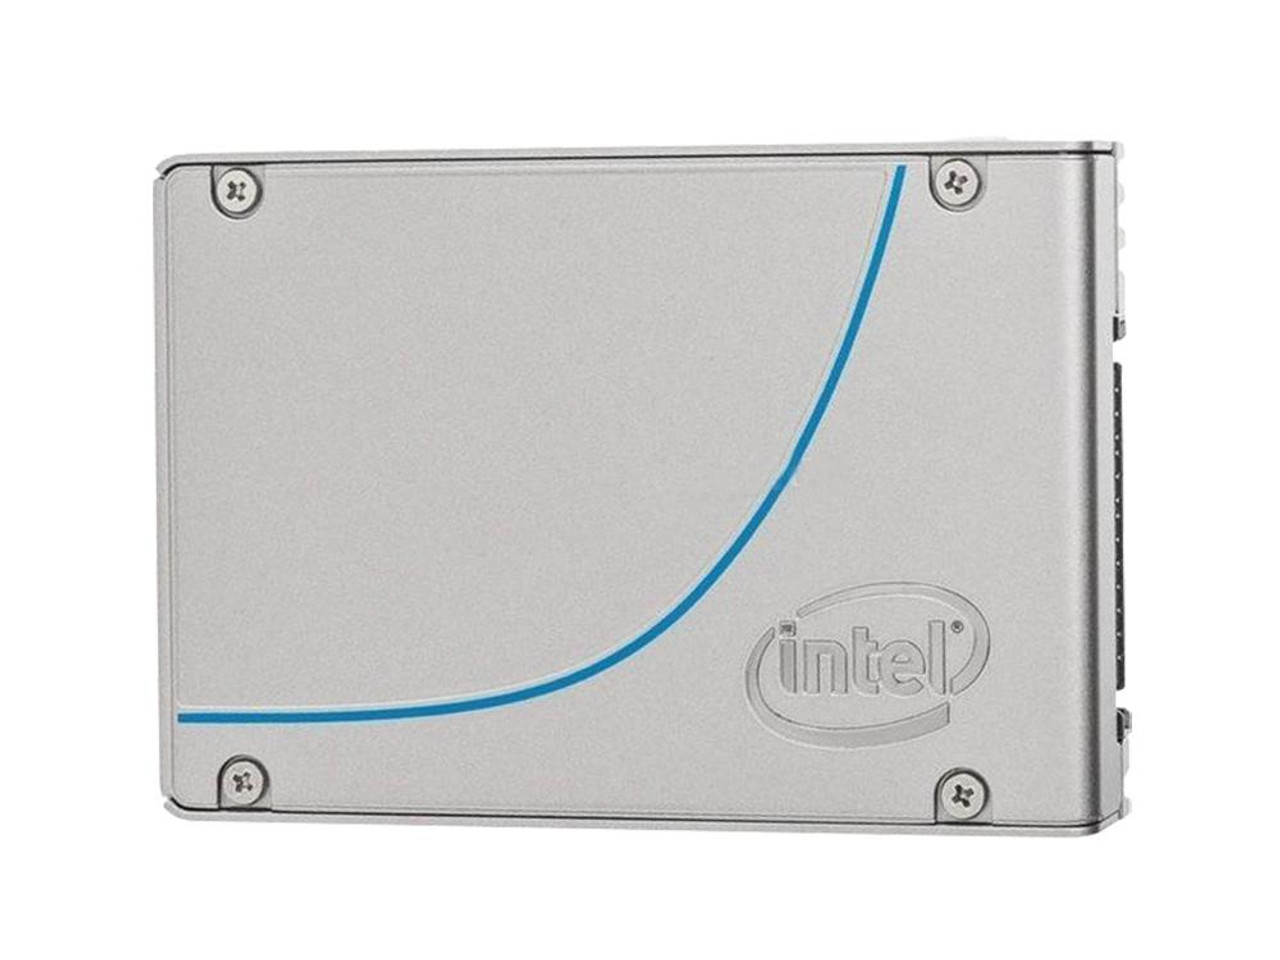 SSD750P400 Intel 750 Series 400GB MLC PCI Express 3.0 x4 NVMe (PLP) U.2 2.5-inch Internal Solid State Drive (SSD)